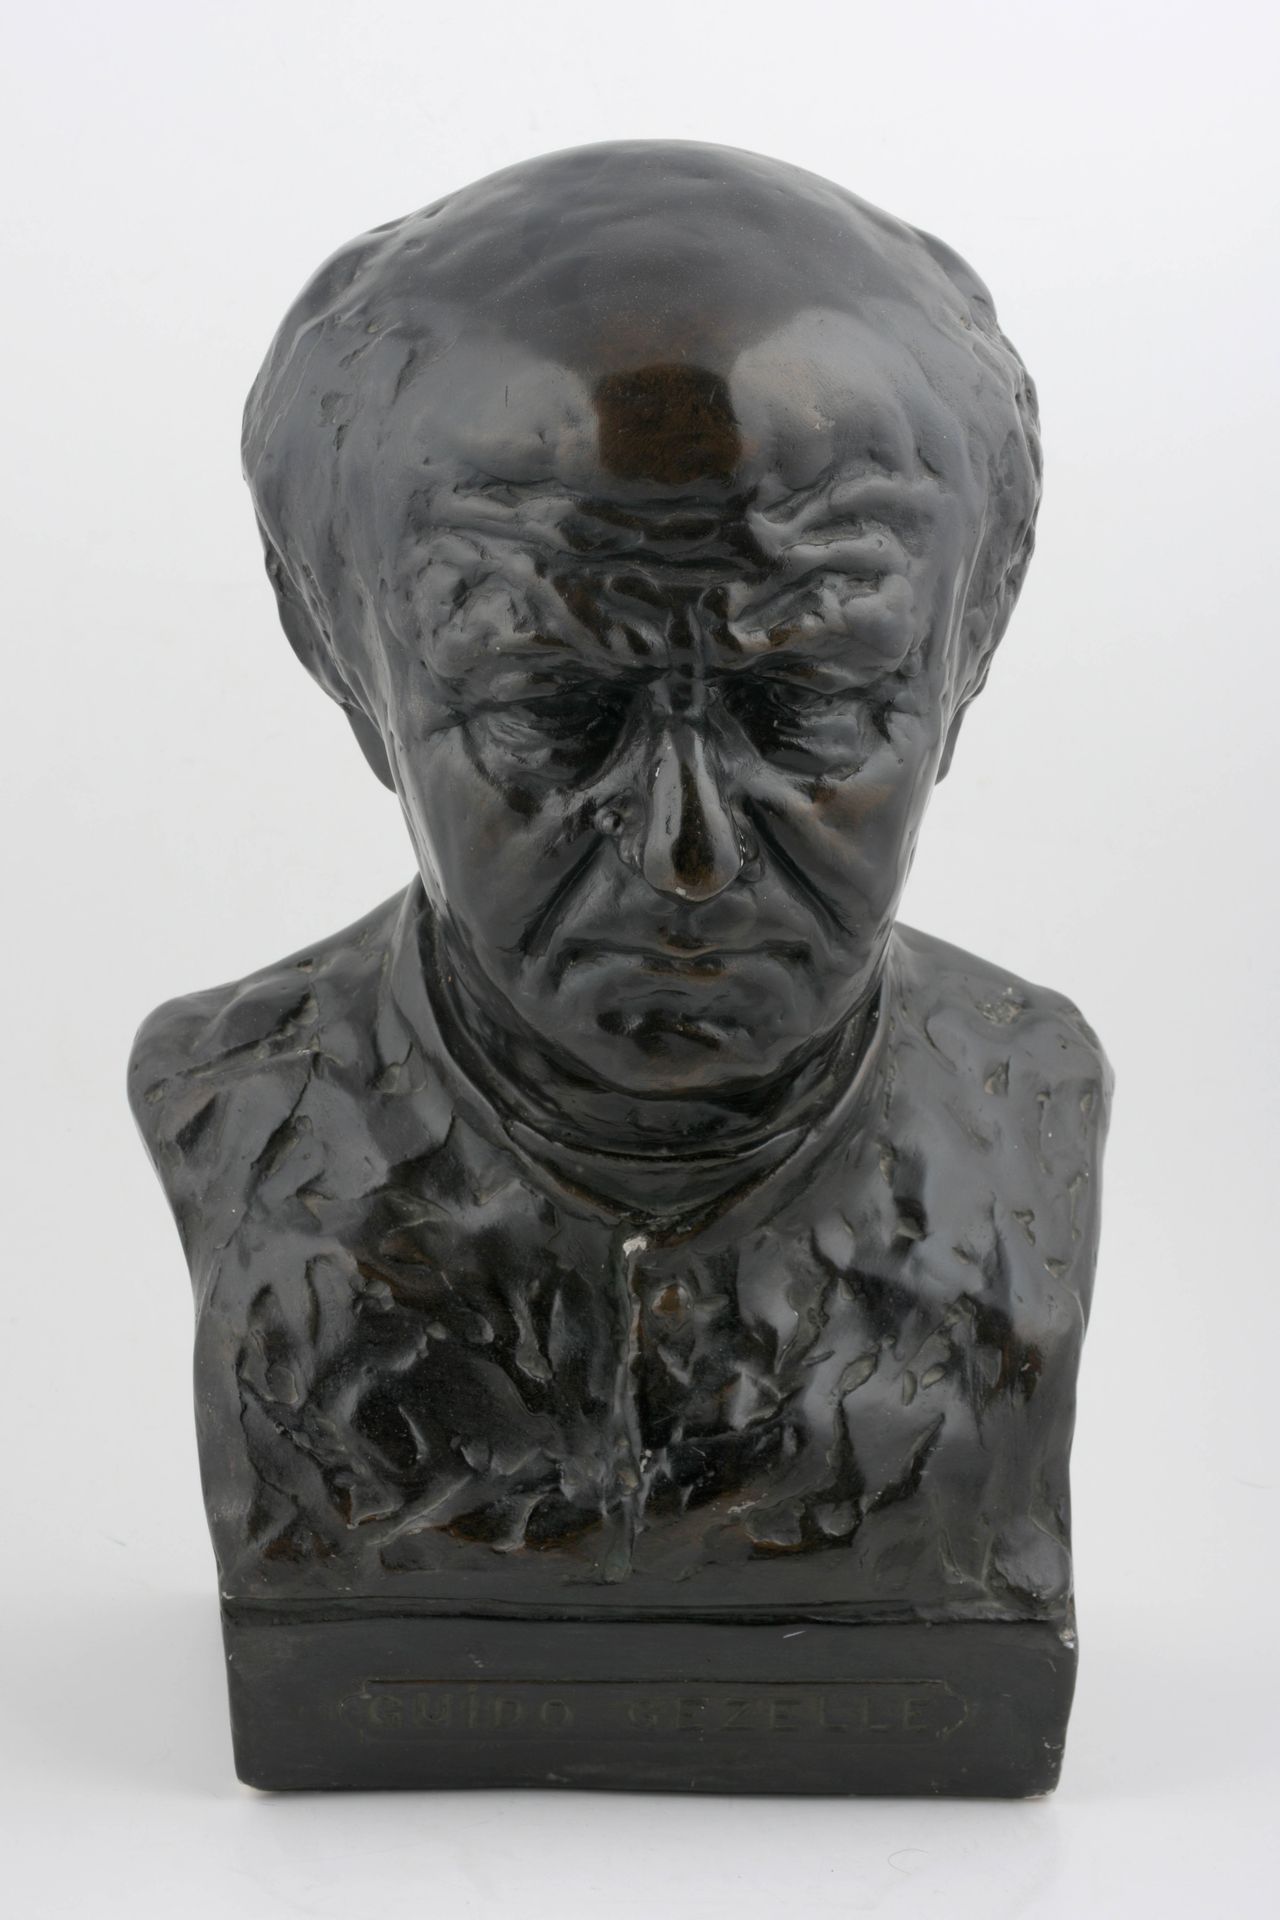 DE MAESTTE Busto de Guido Gezelle

(¿1921?) Busto de Plaasteren. Ca. 45 x 29 cm.&hellip;